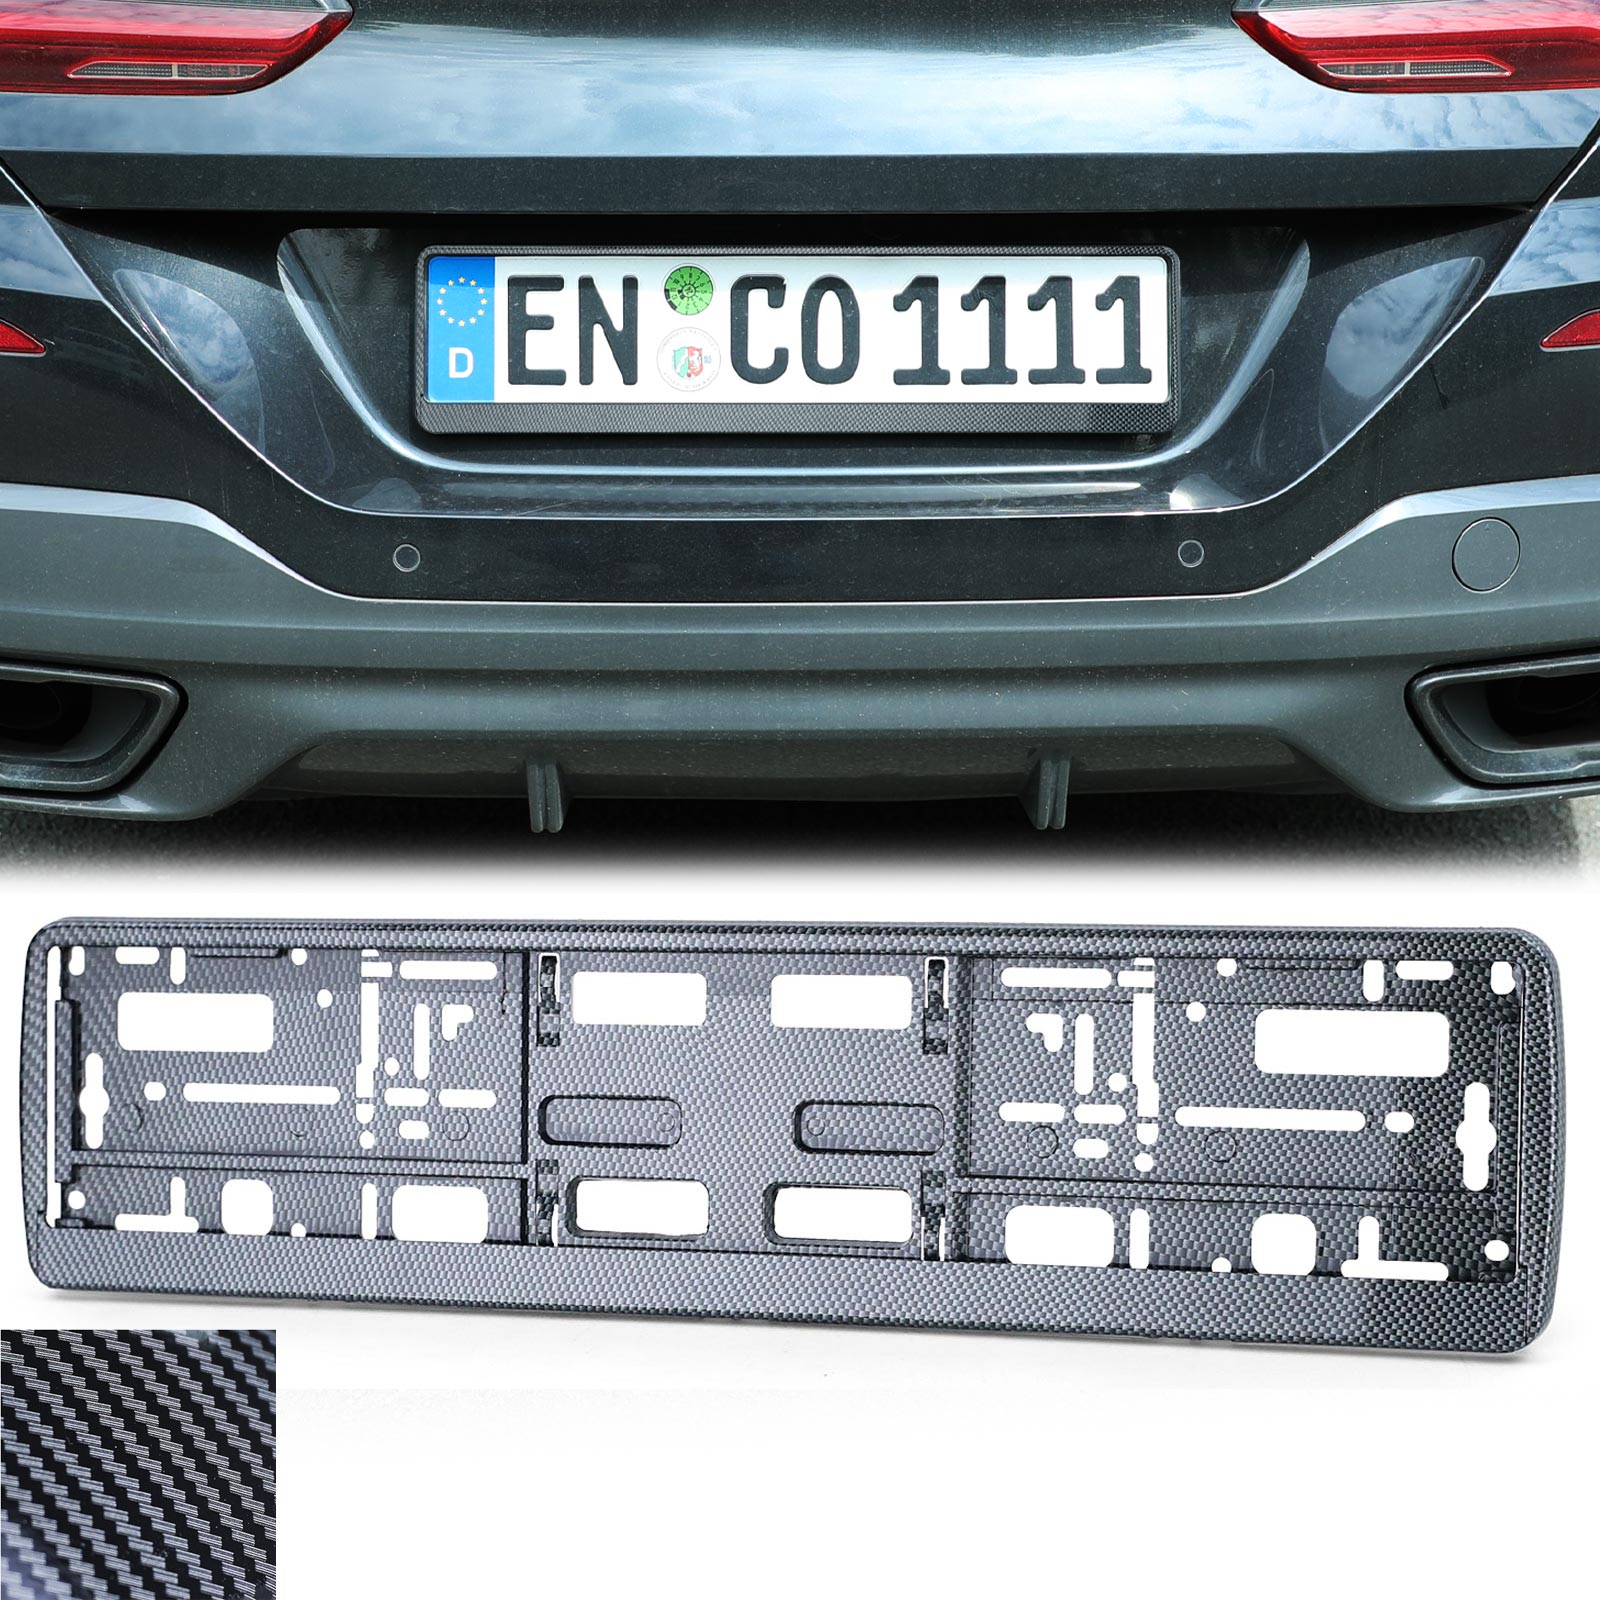 Oldtimer - Kategorie: AUDI - Bild: Audi A7 Kennzeichenhalterung in  Edelstahl schwarz-glänzend